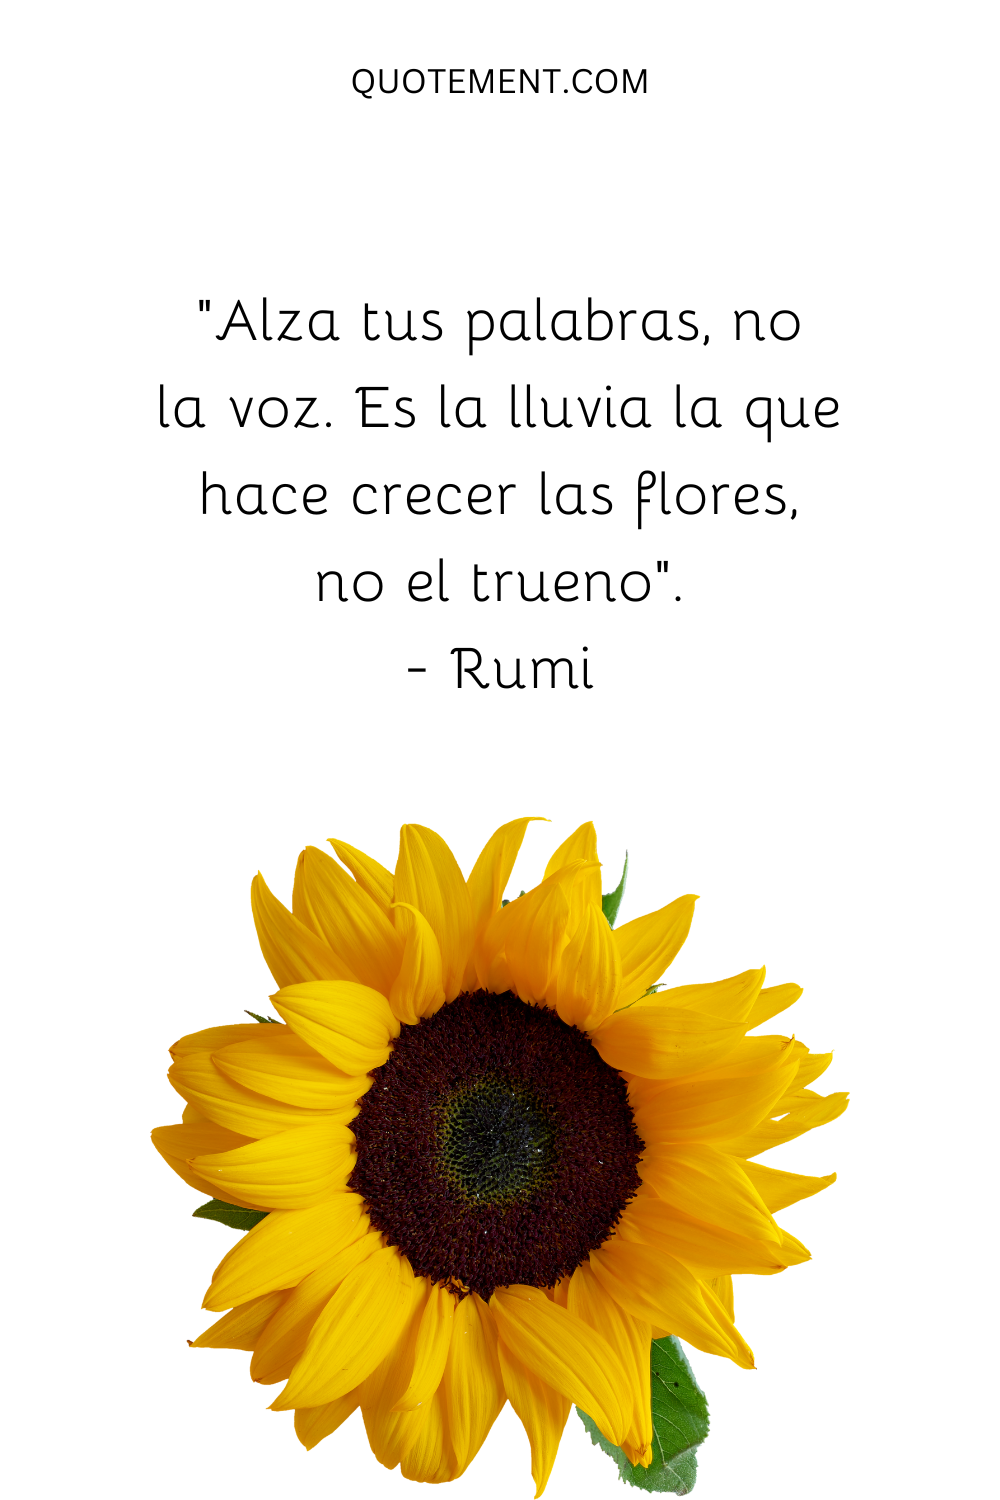 "Alza tus palabras, no la voz. Es la lluvia la que hace crecer las flores, no el trueno". - Rumi